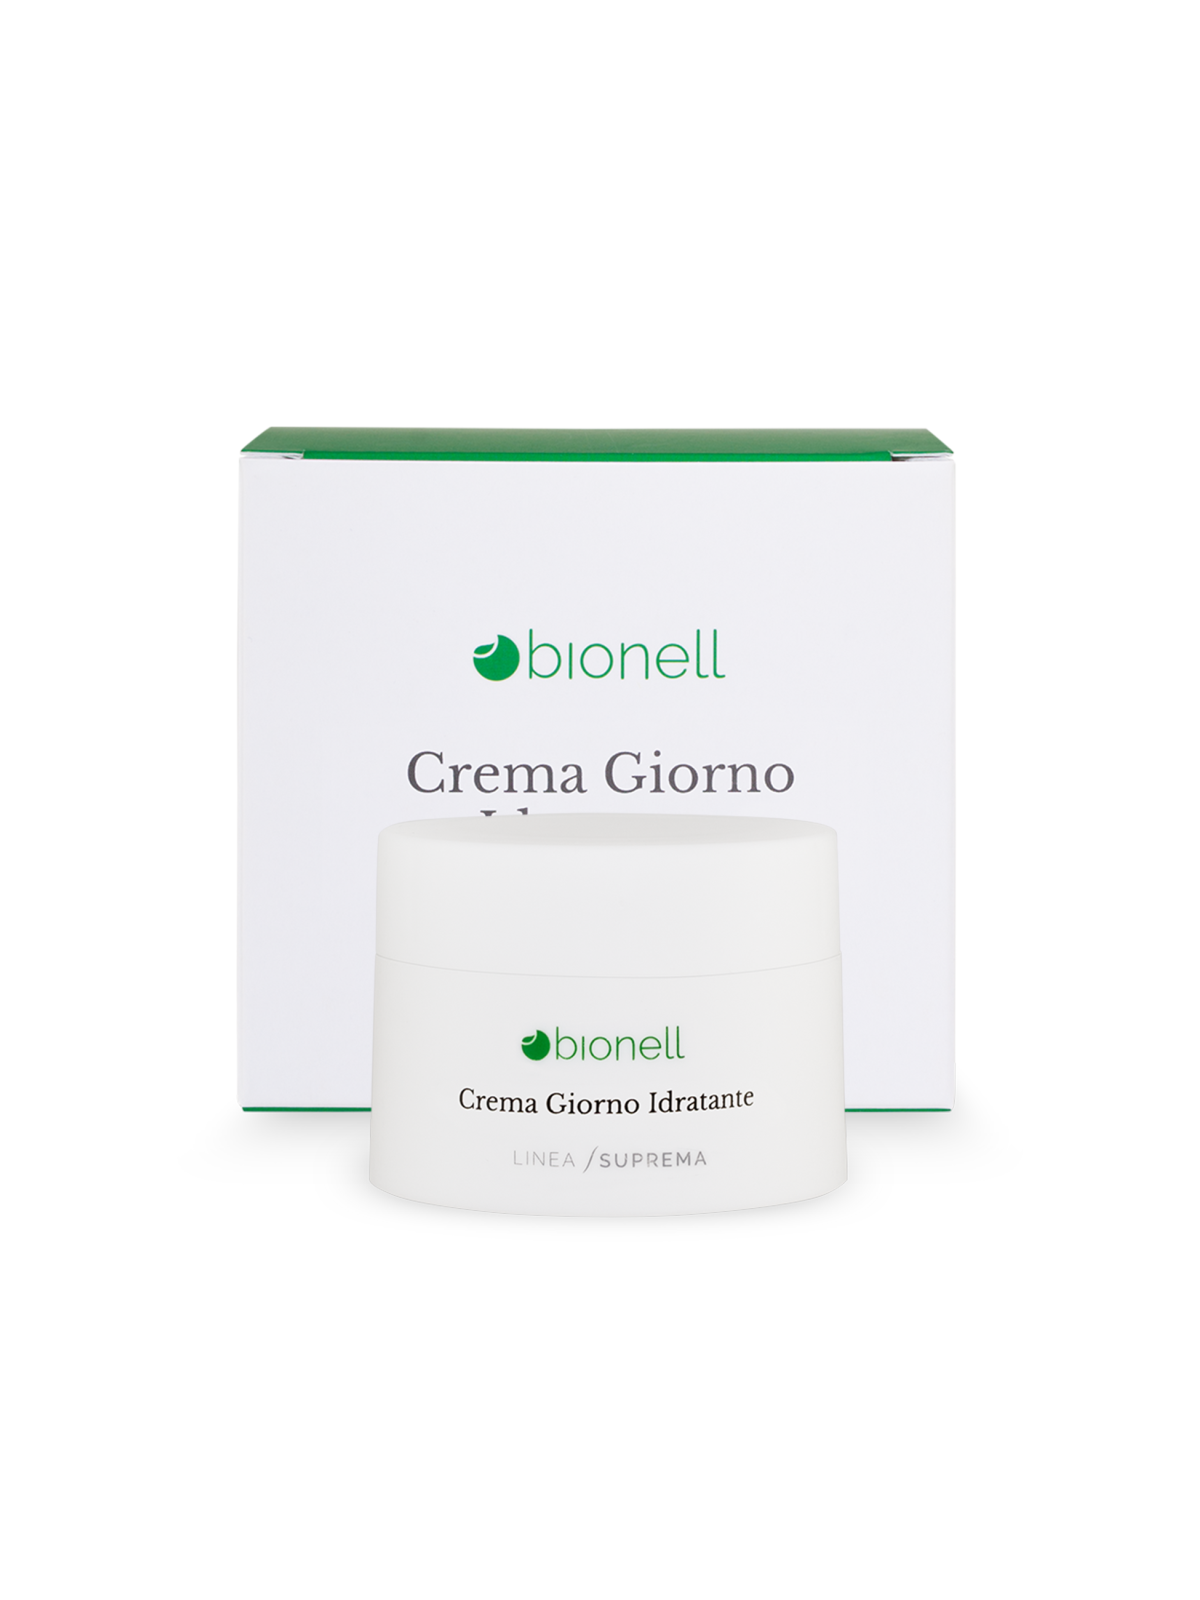 Bionell Crema giorno idratante 50 ml 8,80 € -20%